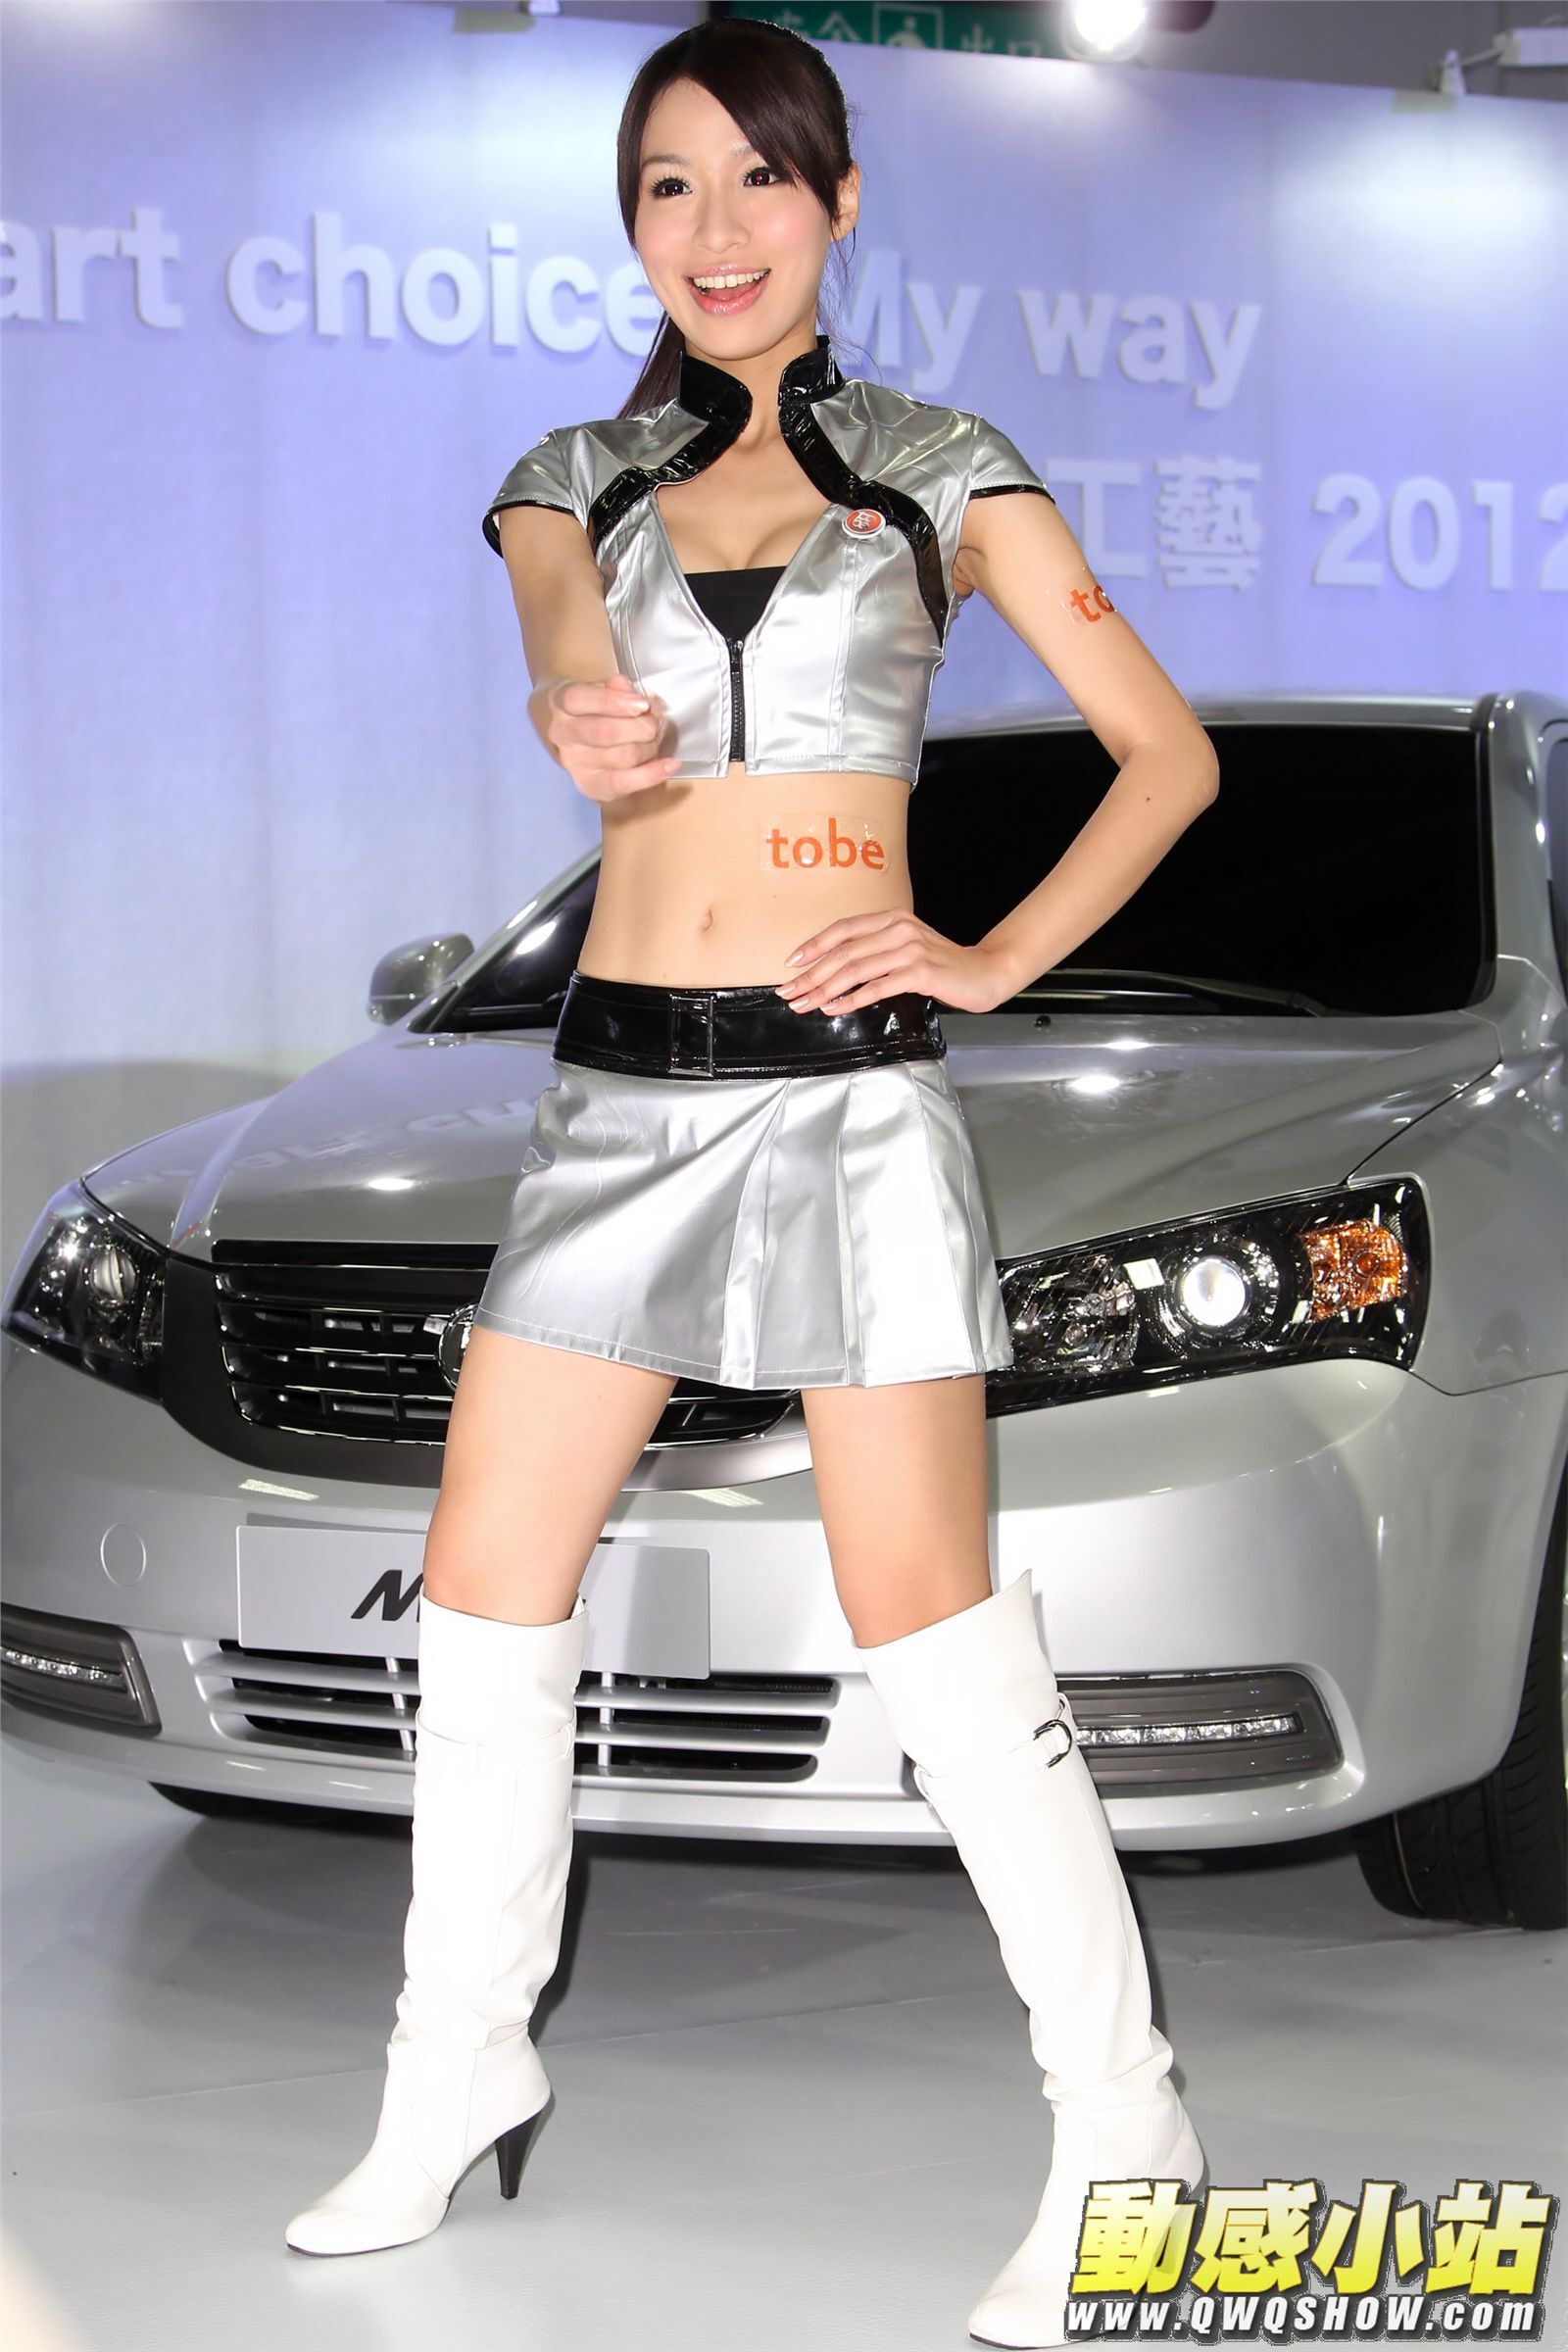 2012新车展汽车开场舞 热舞美女图片打包下载  动感小站